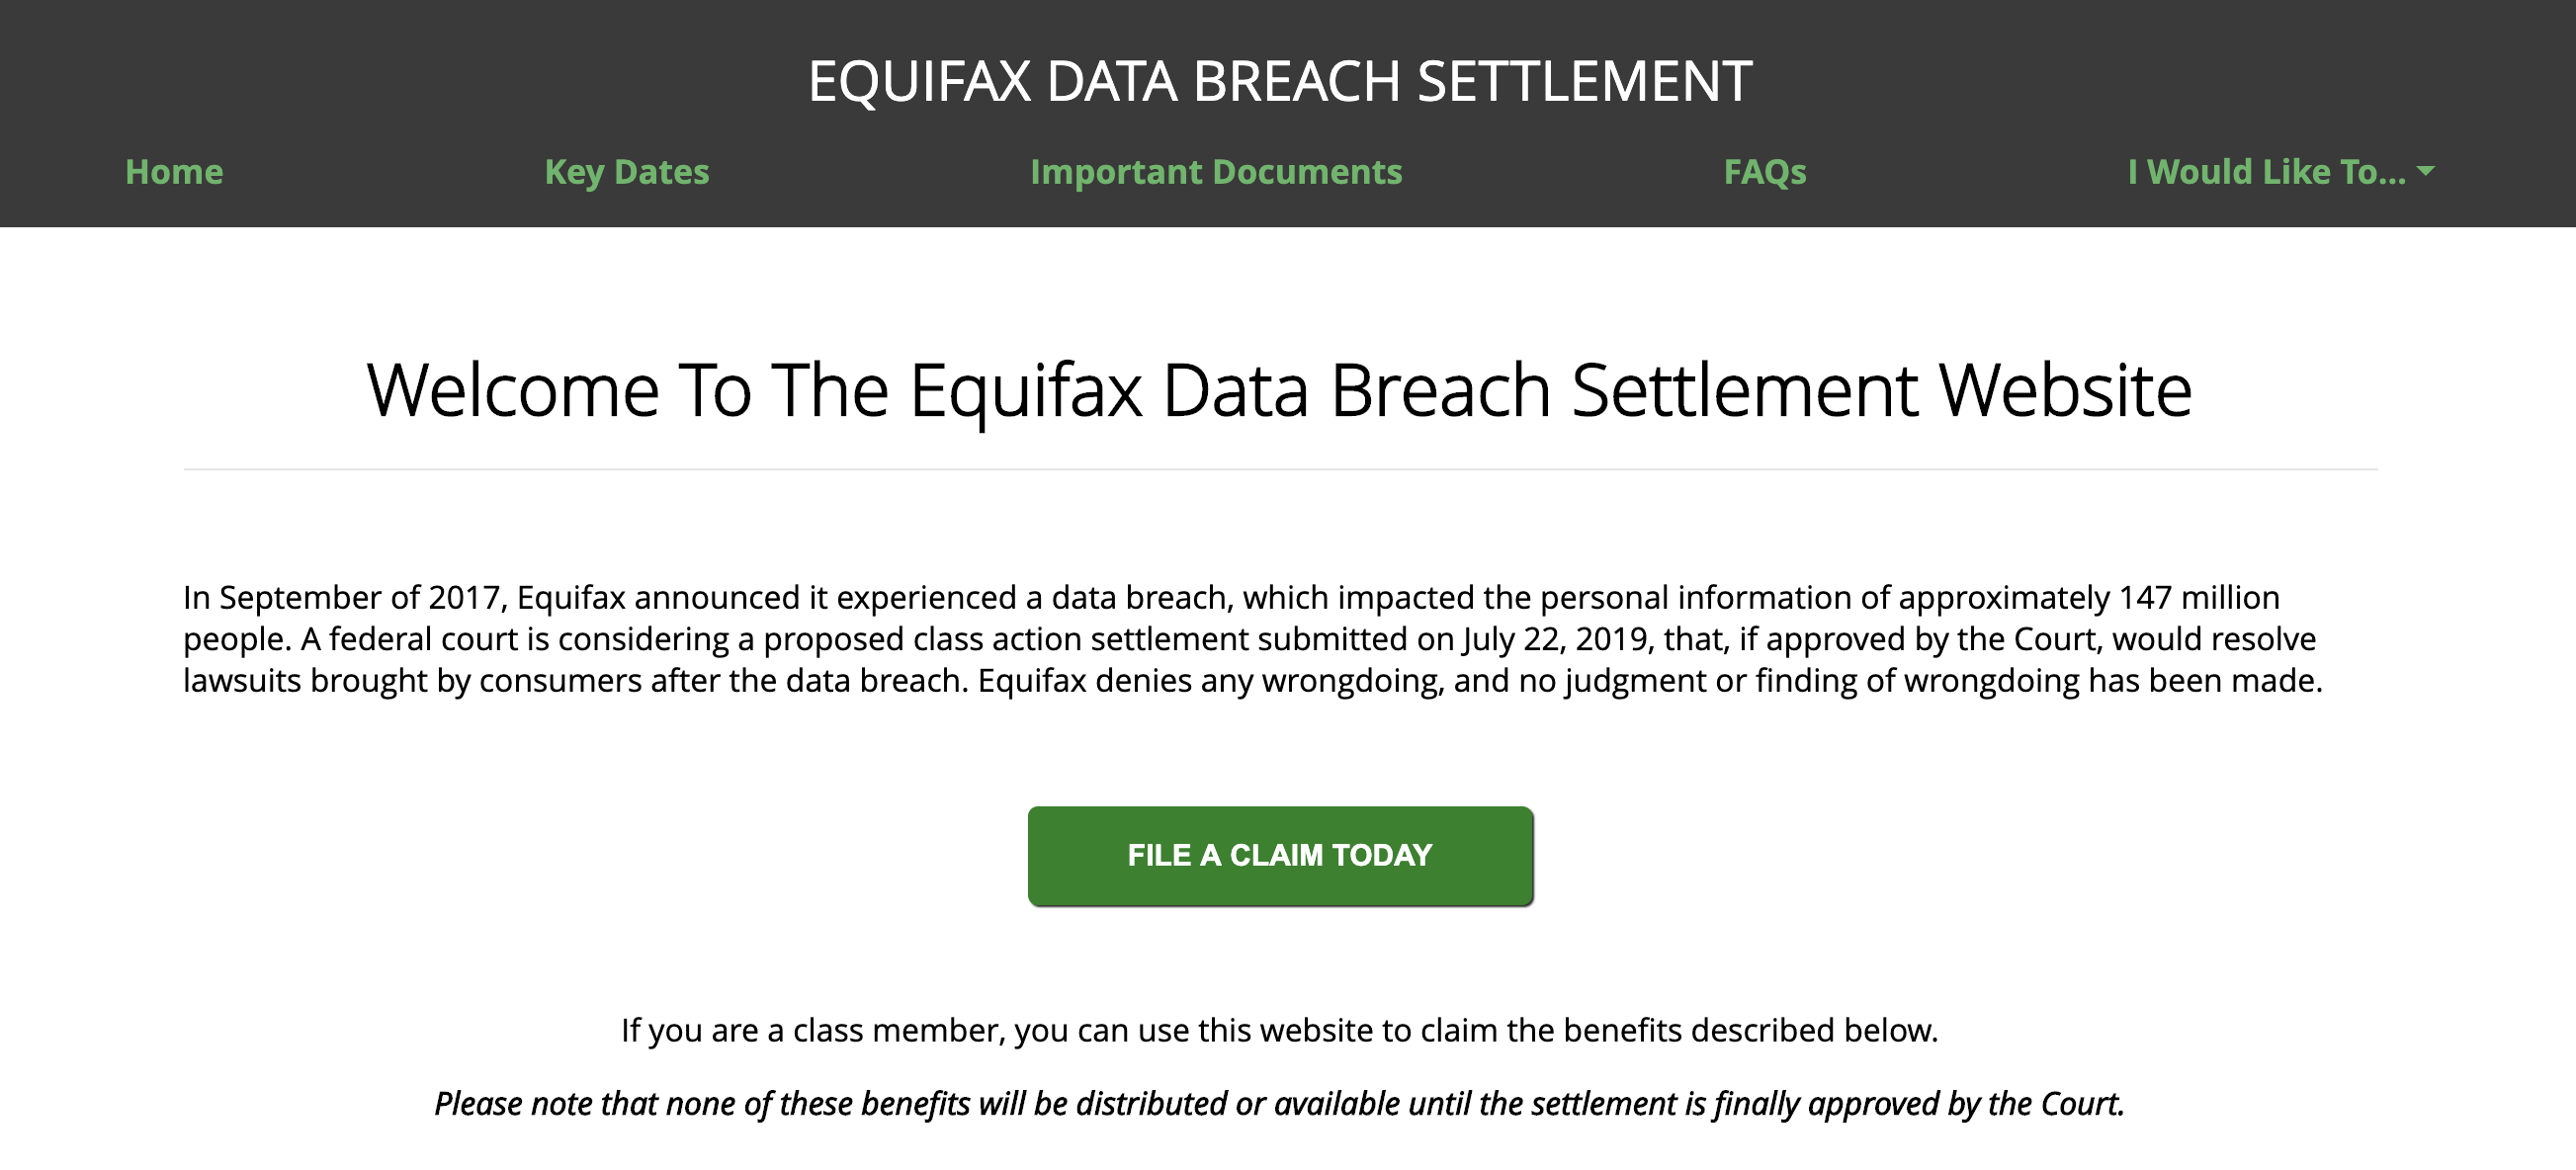 Screen capture of Equifax's data breach settlement website